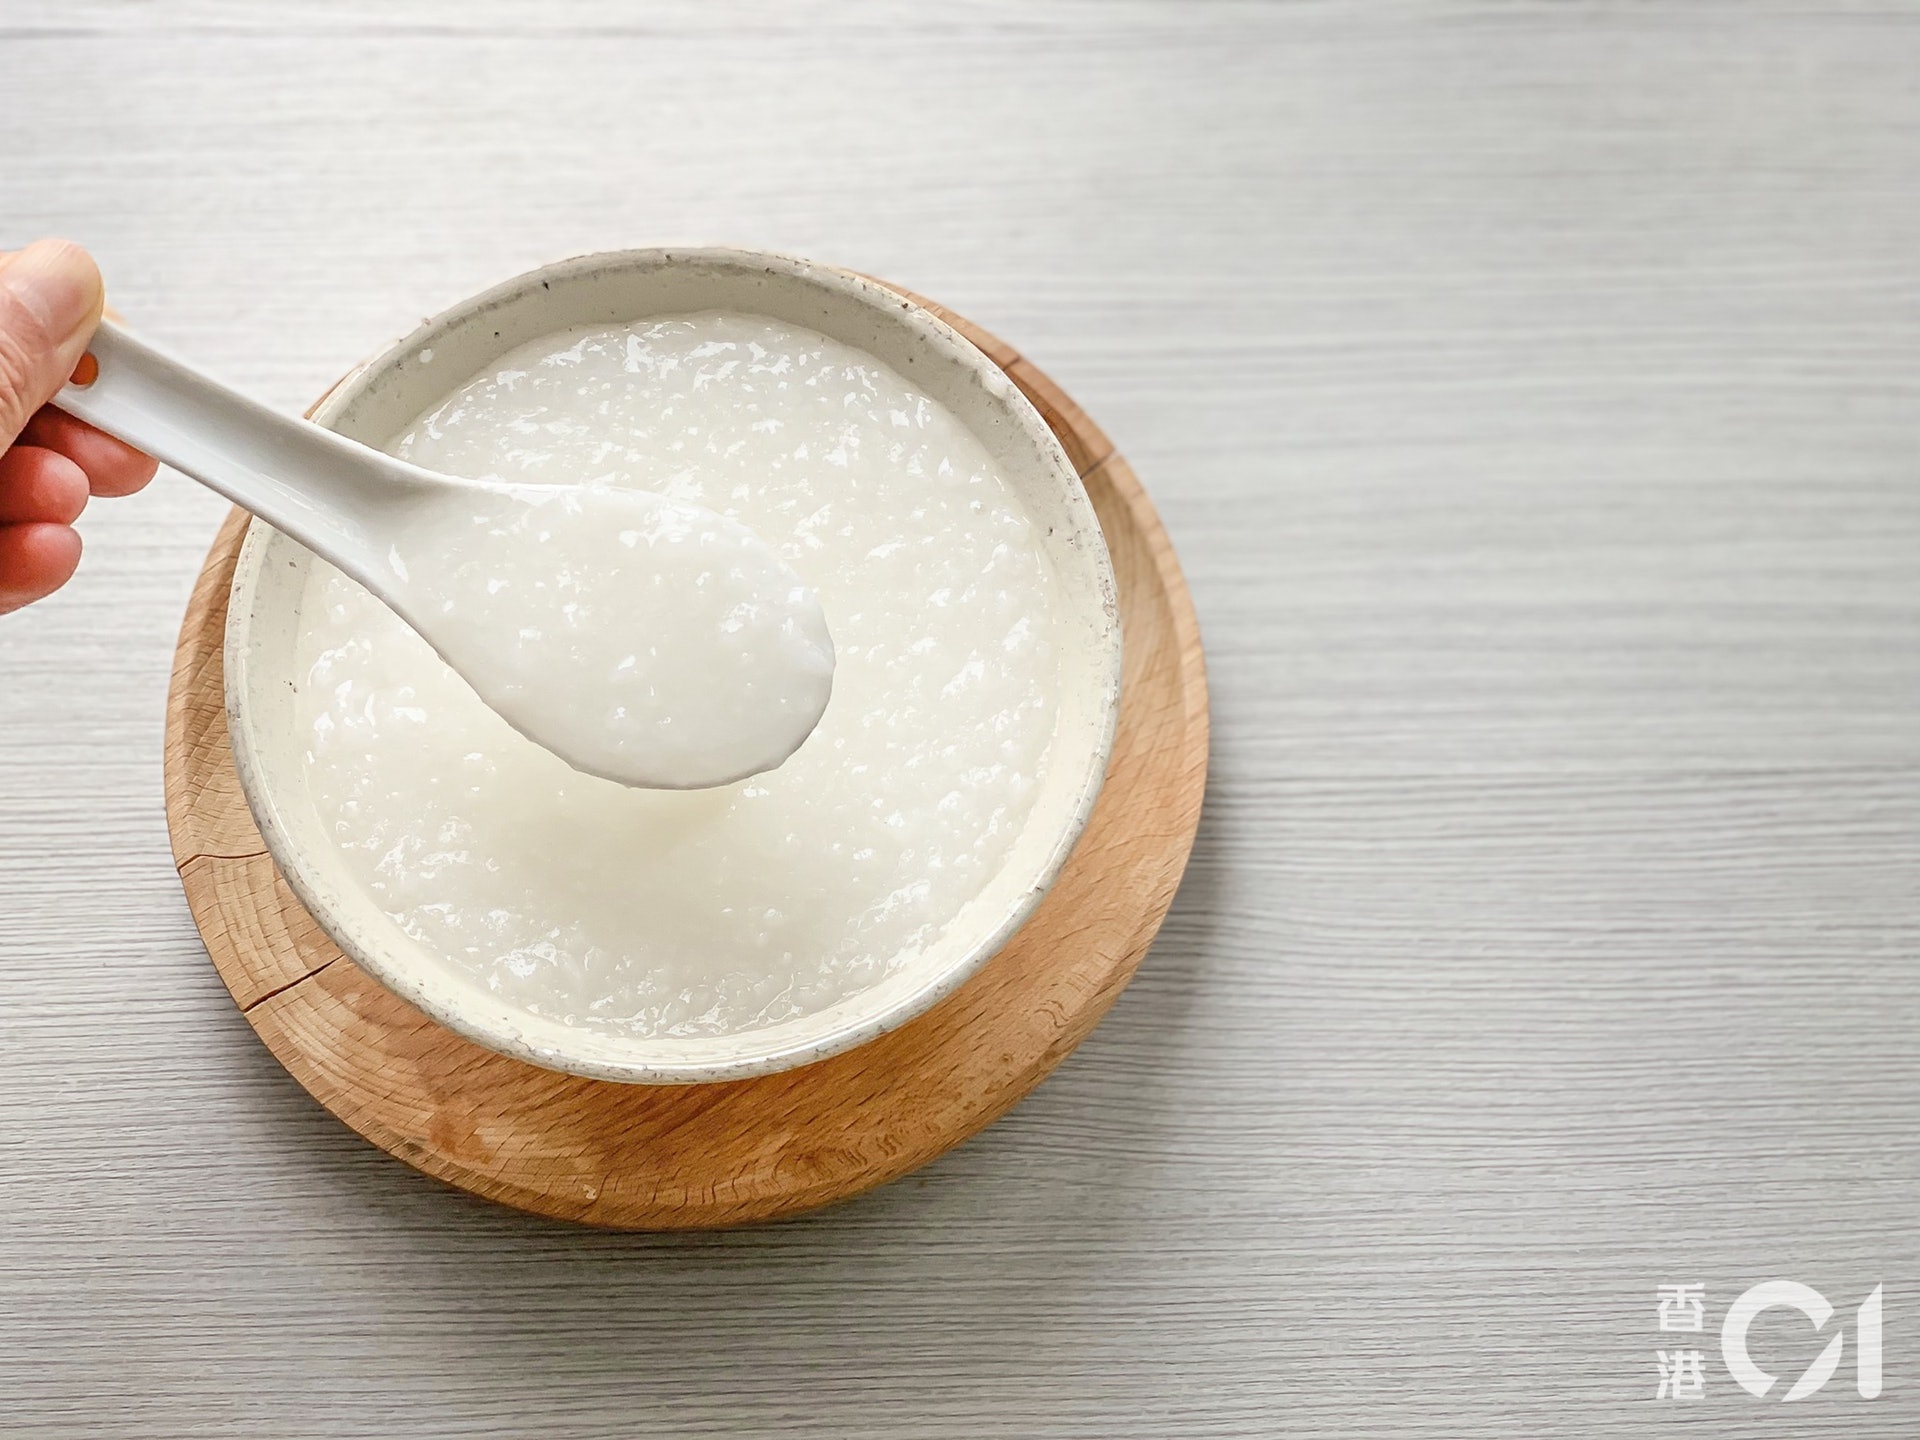 白粥看來熱量不高，其實比白飯的升糖指數高，人體更易吸收白粥的糖分，同時較難在白粥中獲得飽足感。